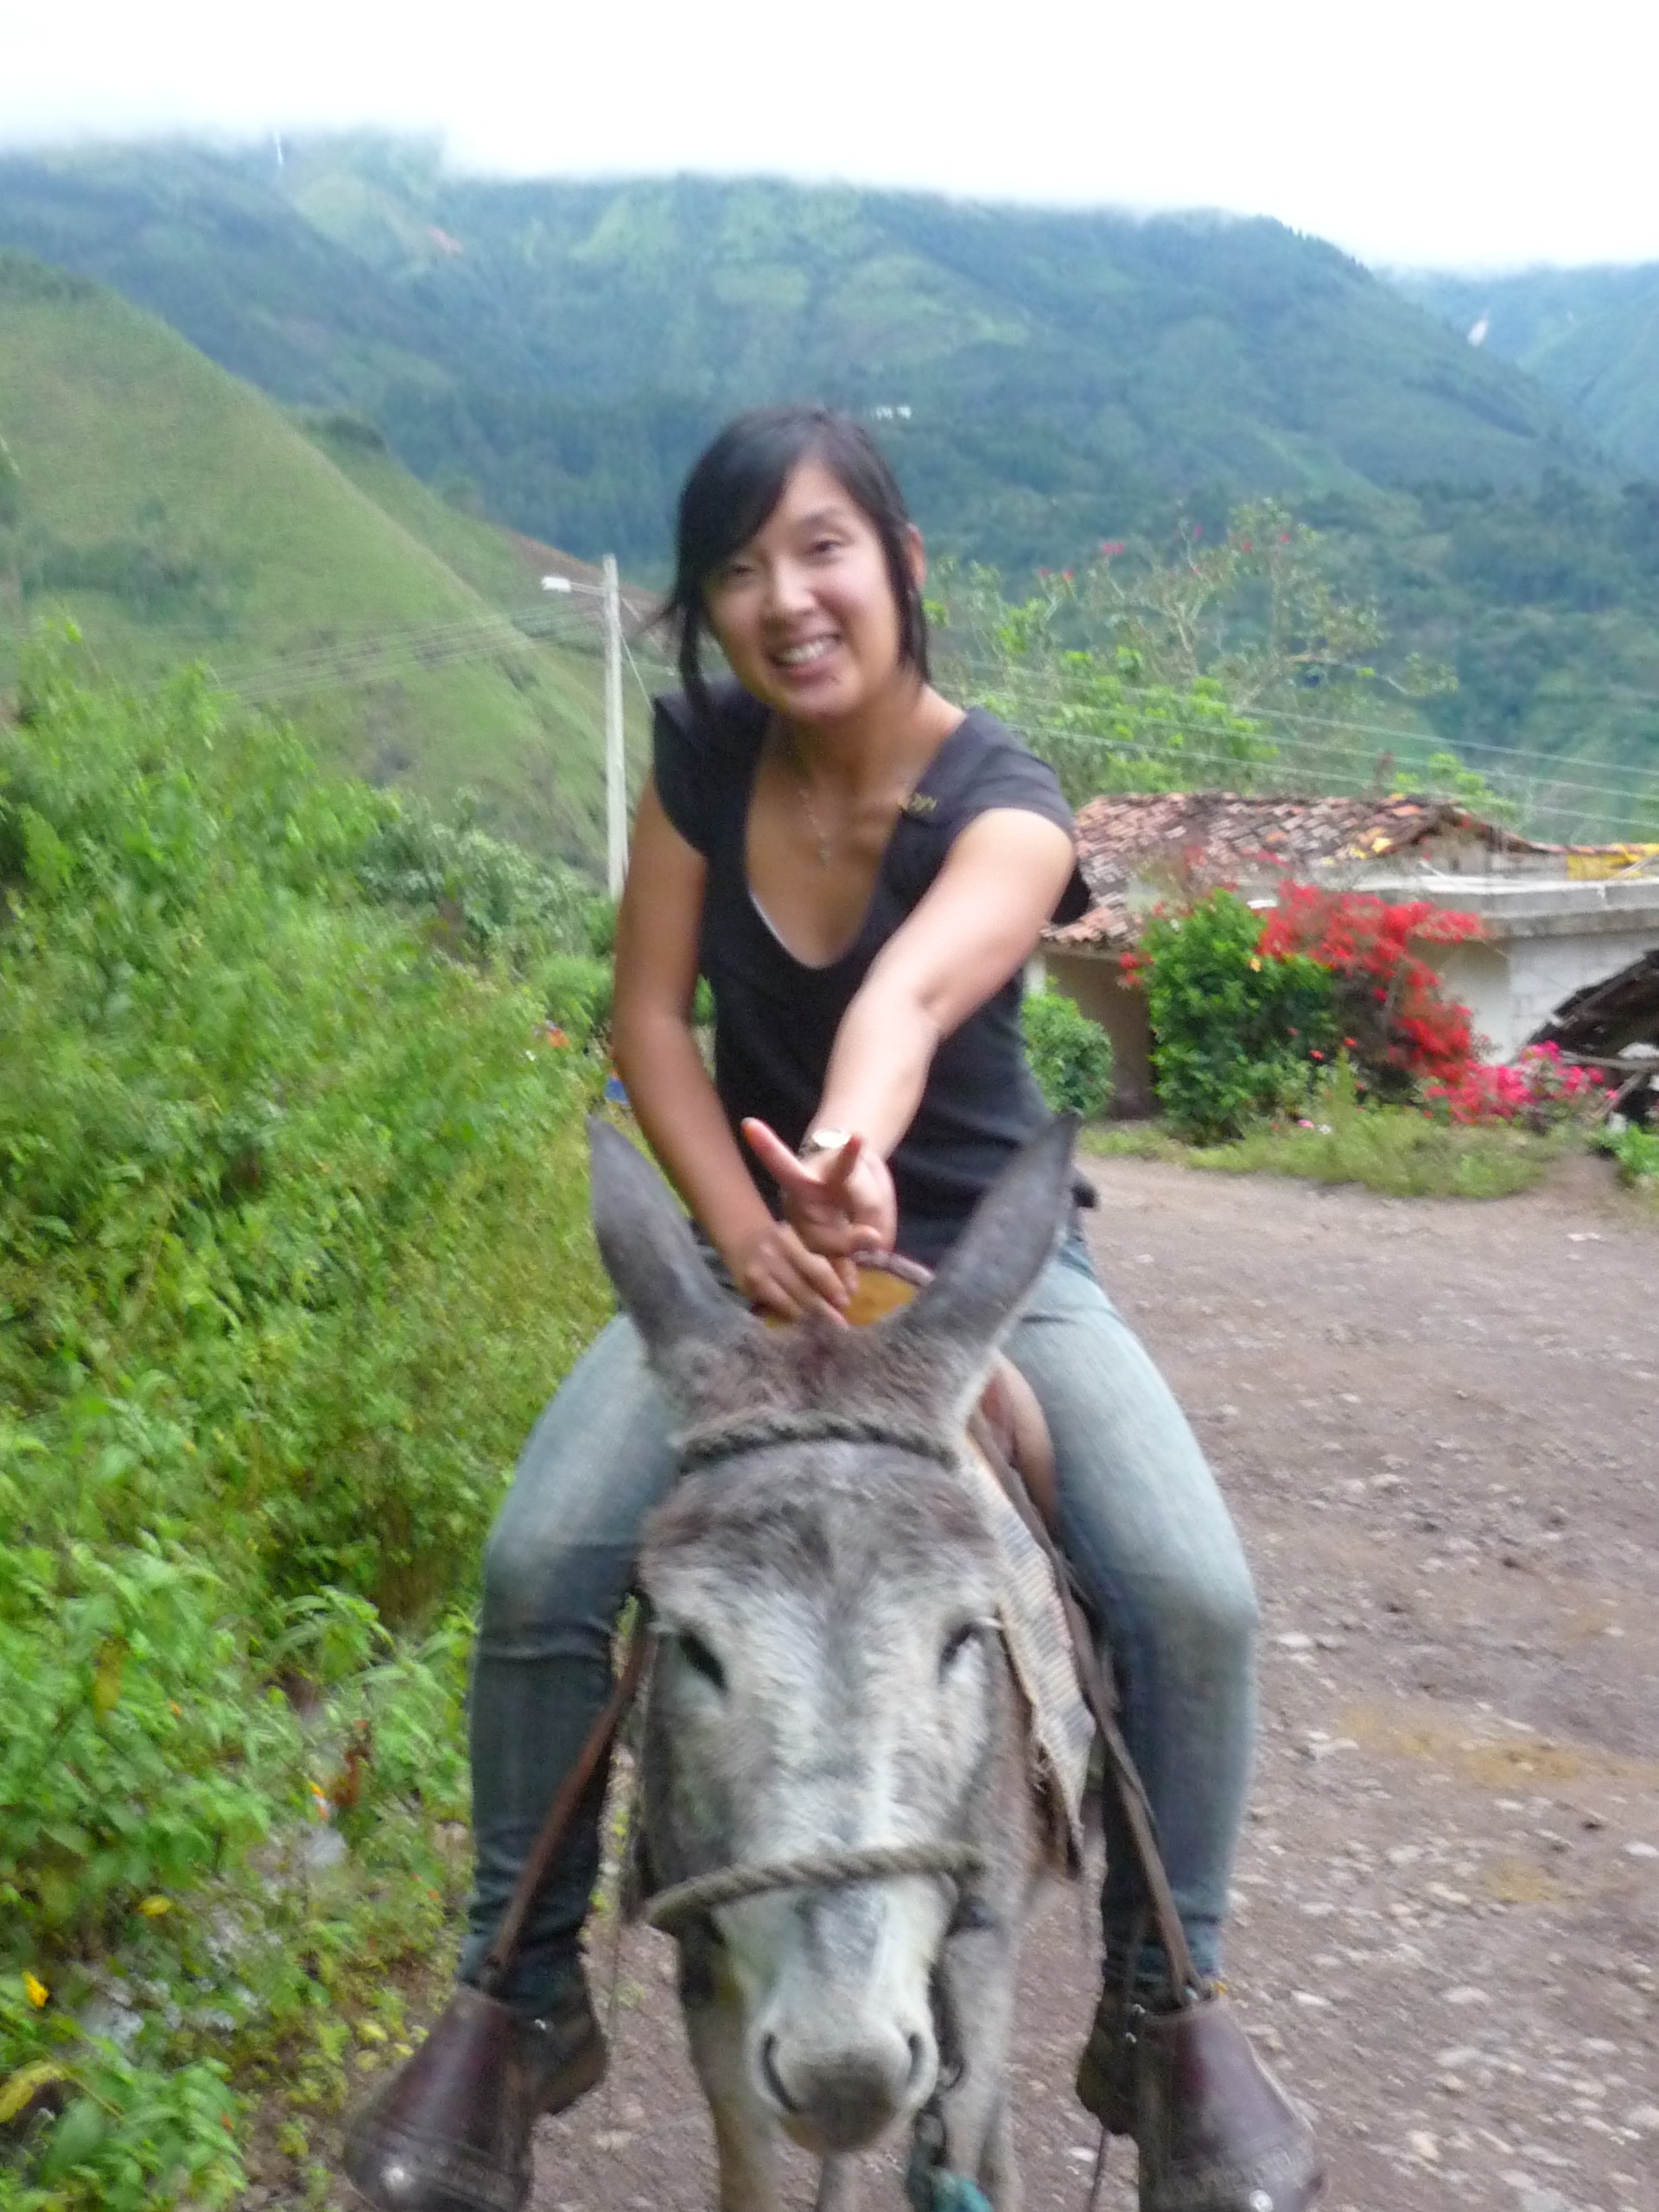 On a donkey in El Airo, Ecuador.